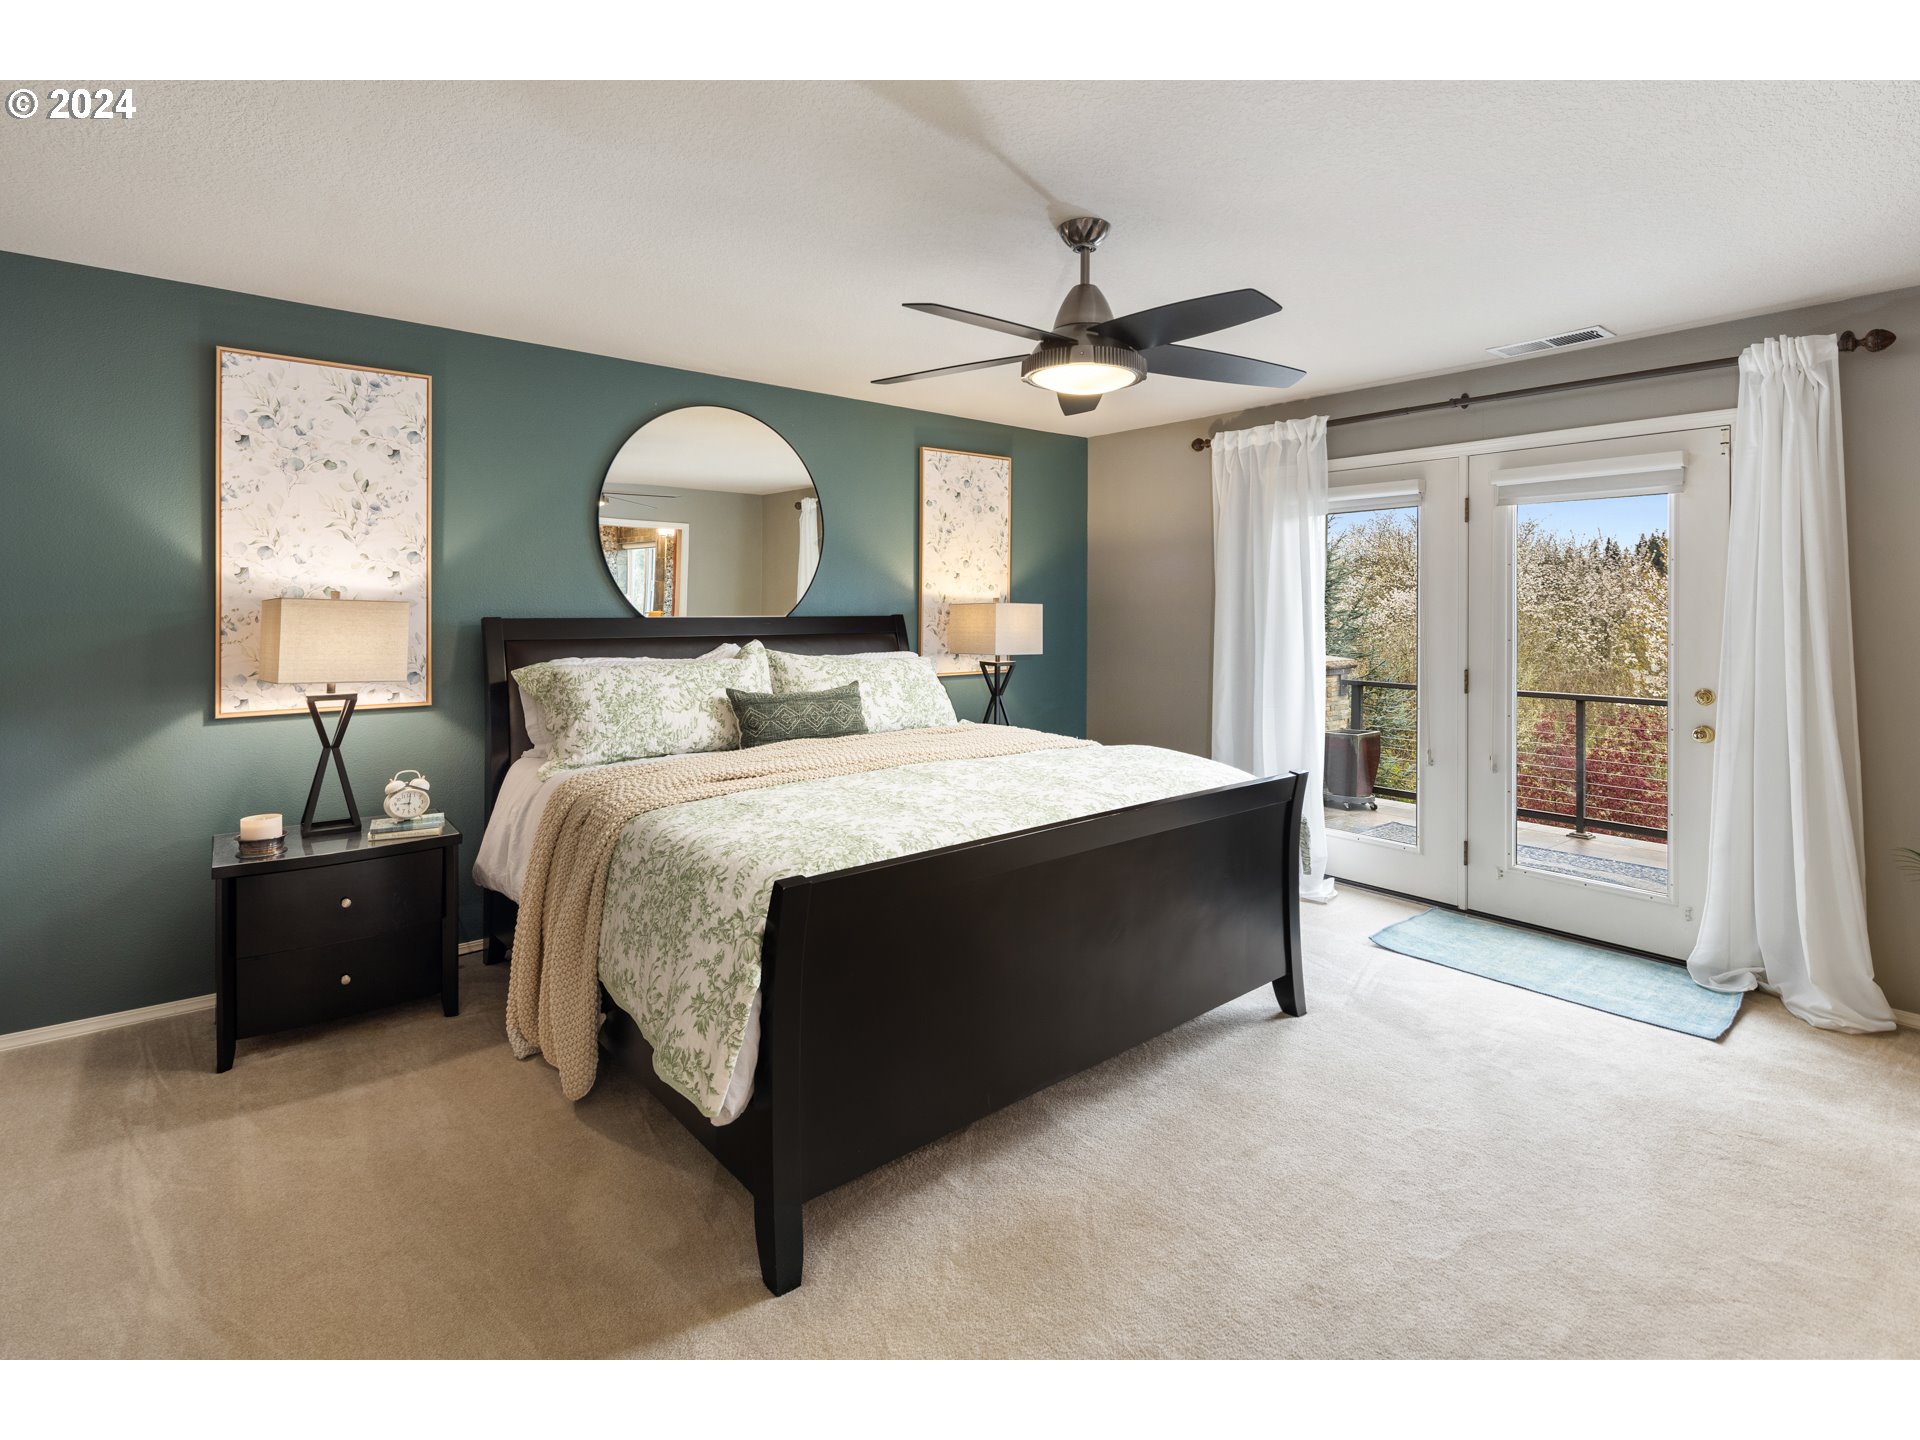 Owner's Suite Bedroom-Upper